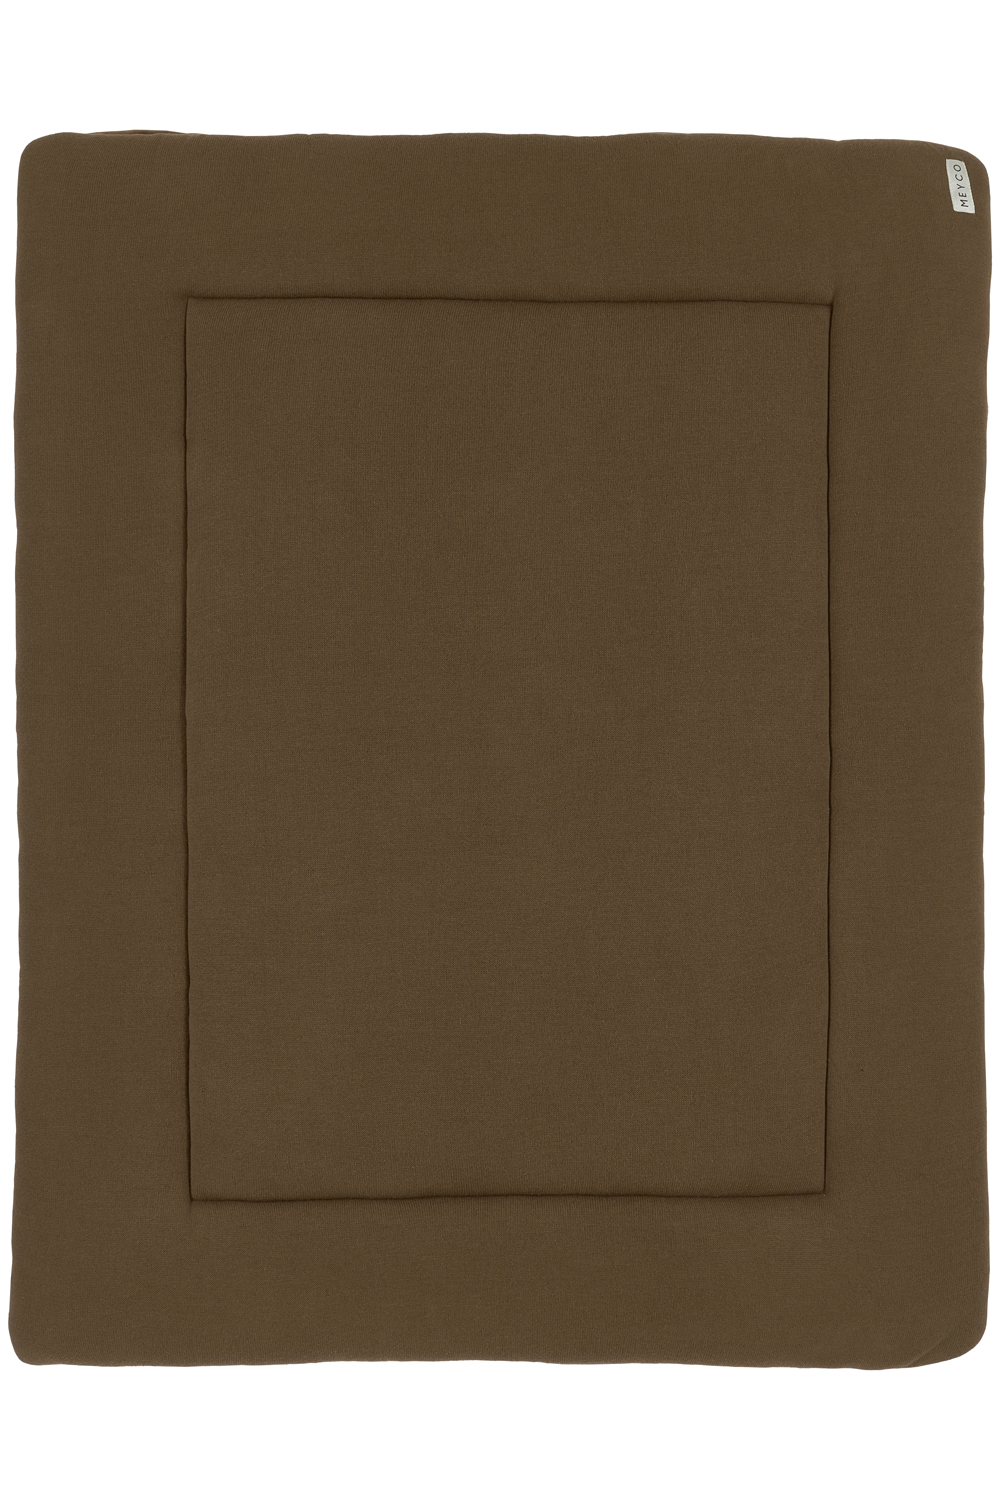 Boxkleed Knit Basic velvet - chocolate - 77x97cm